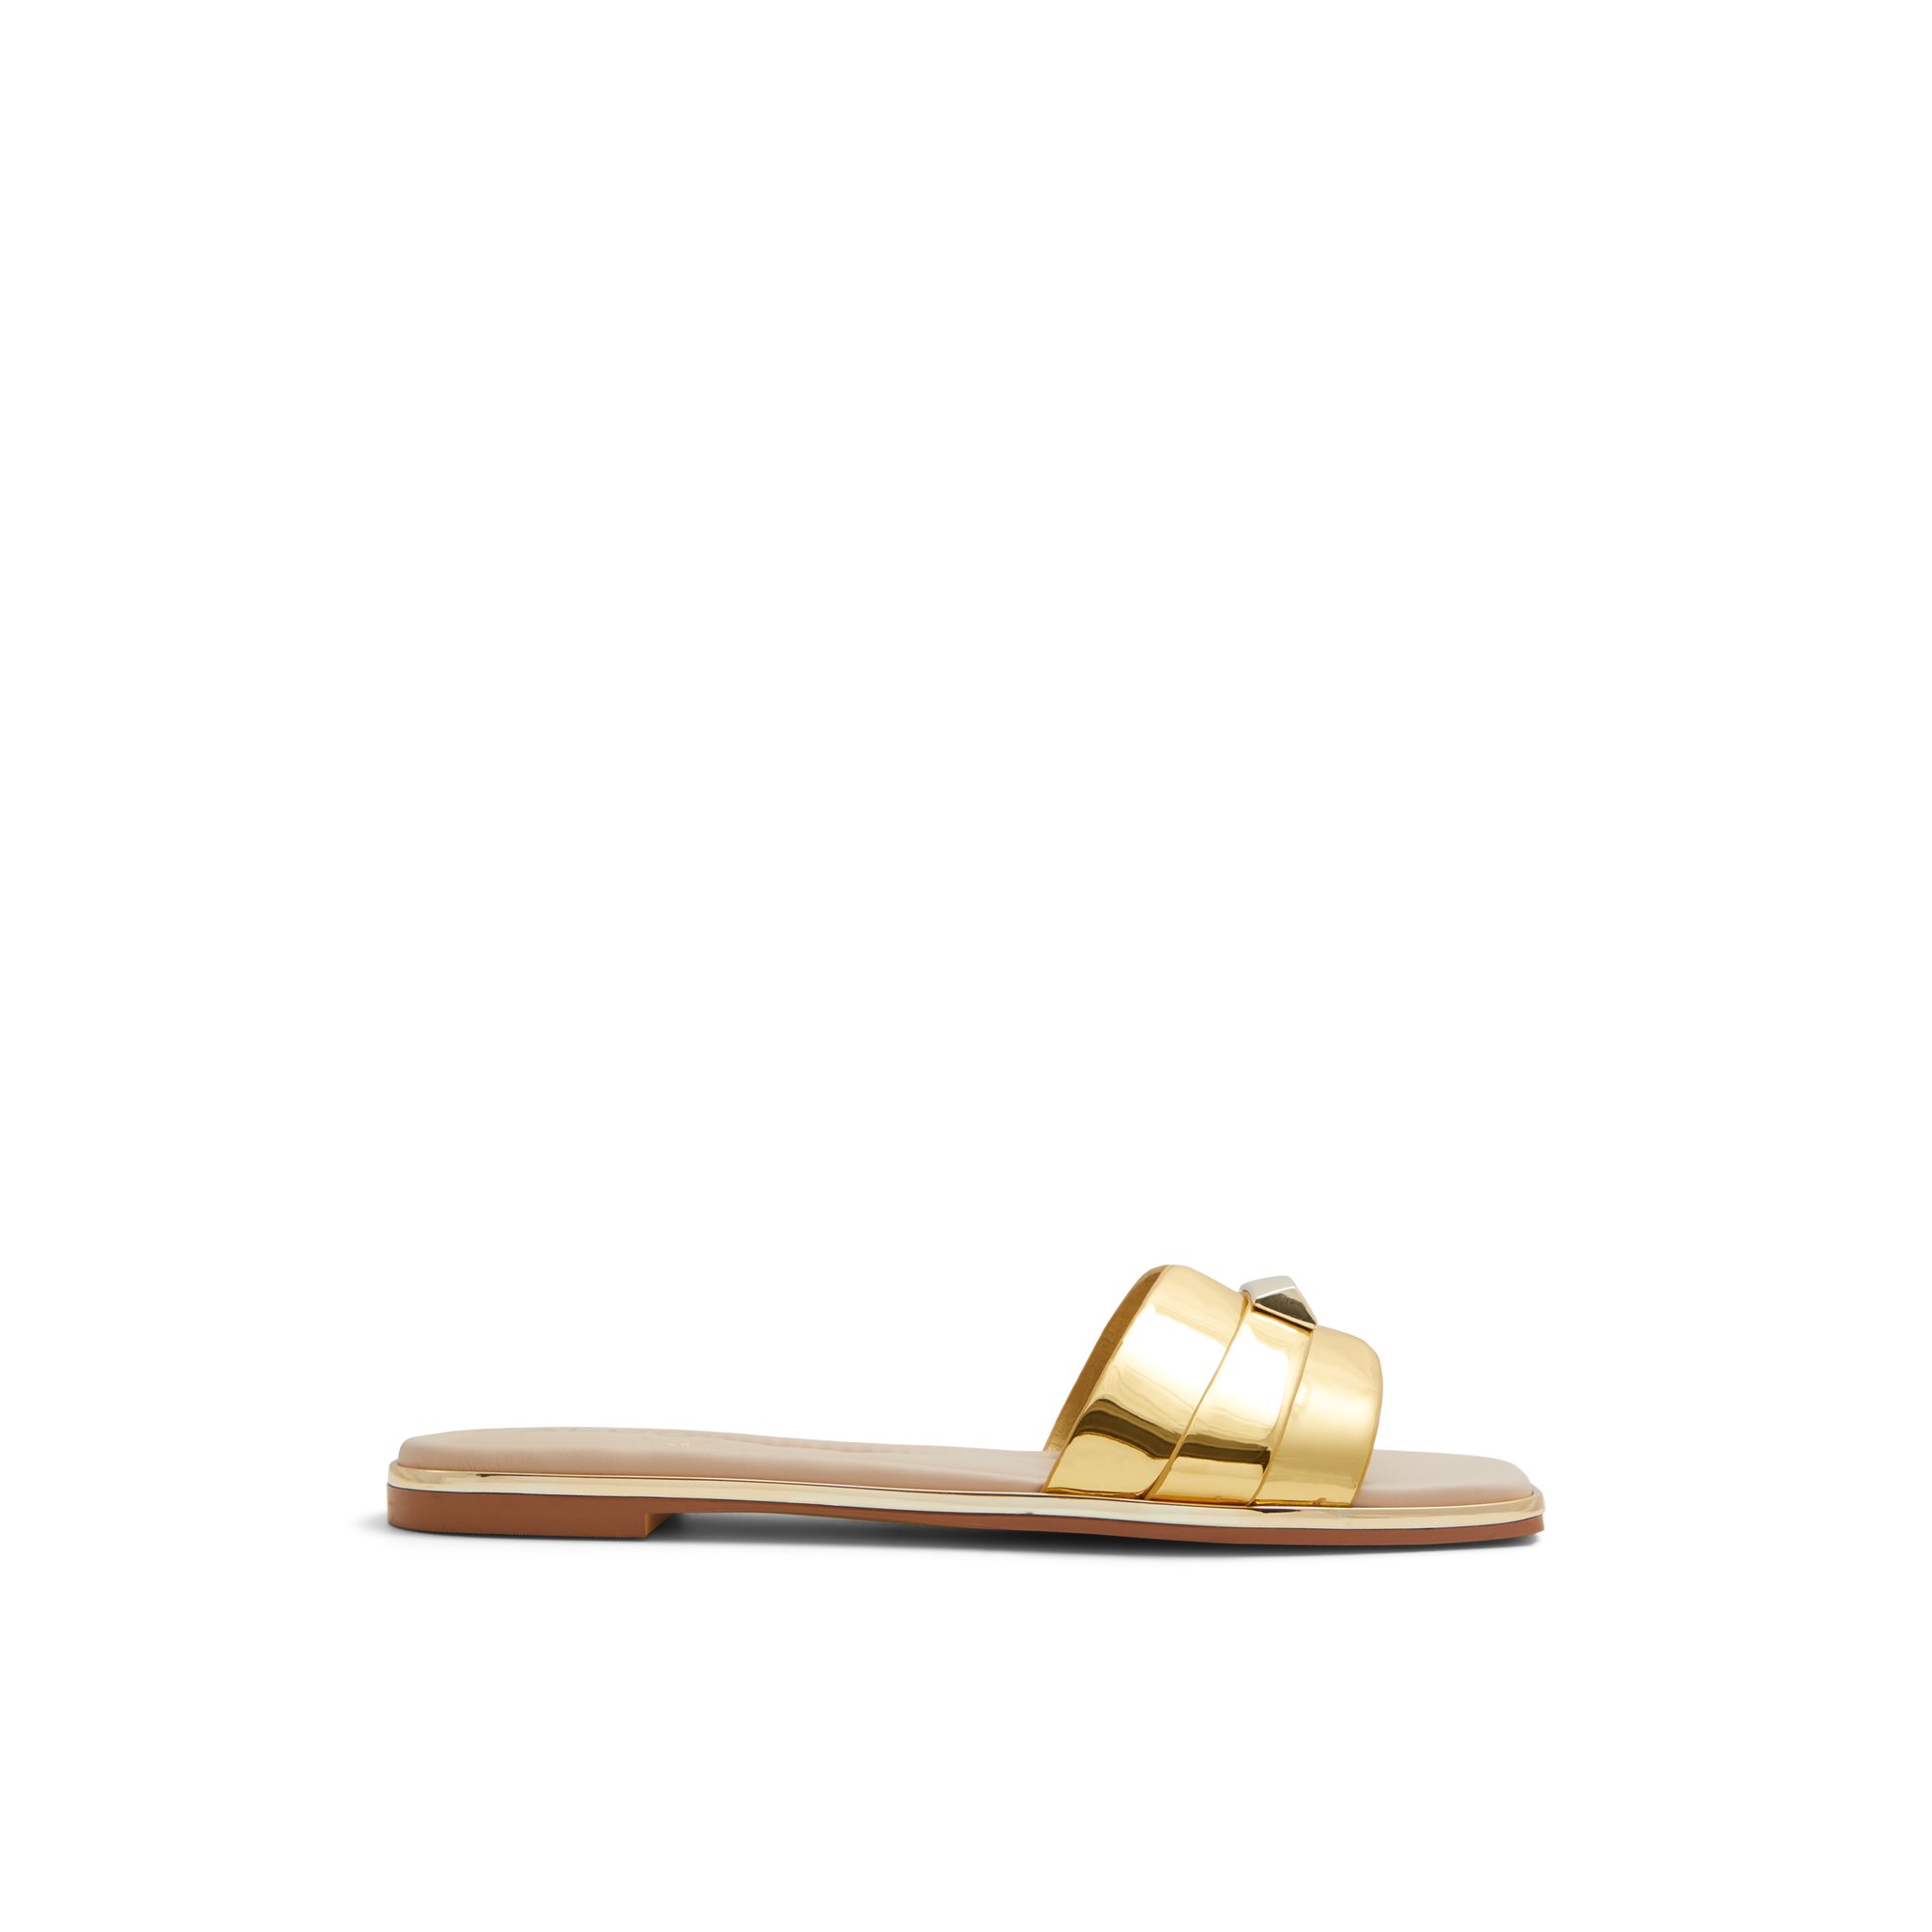 ALDO Darine - Women's Flat Sandals - Gold